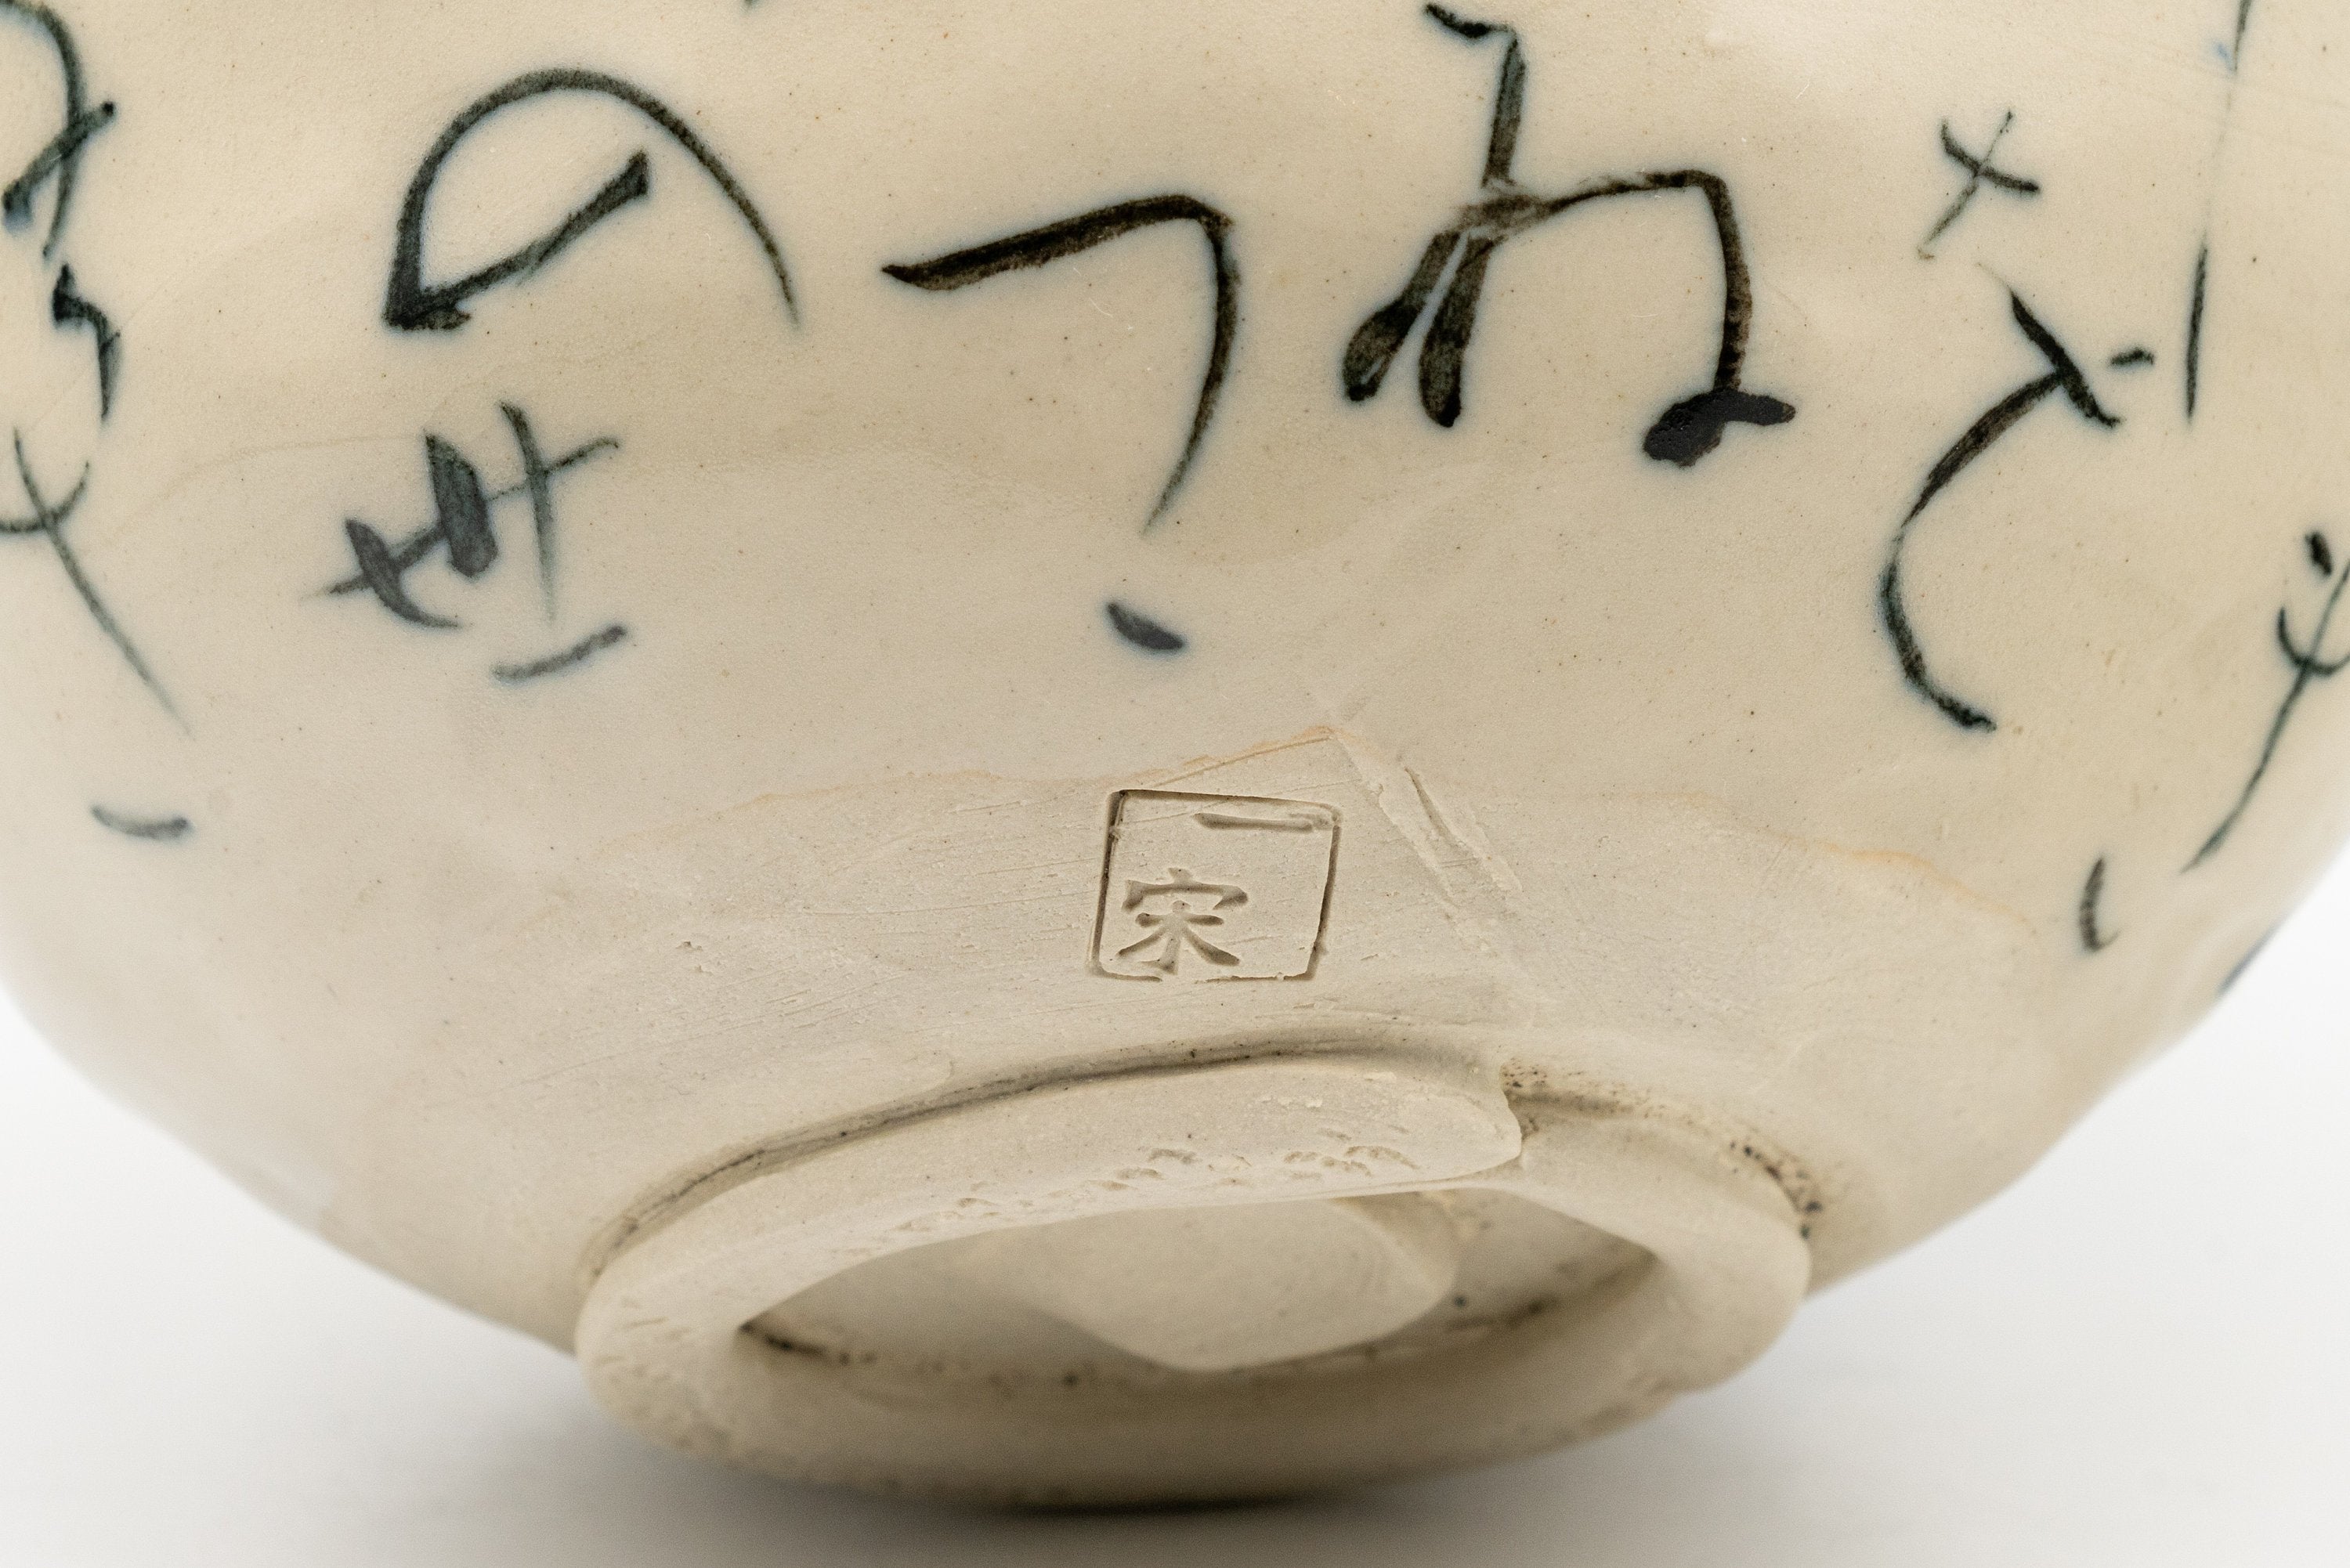 Japanese Matcha Bowl - Hiragana Calligraphy Wan-nari Chawan - 375ml